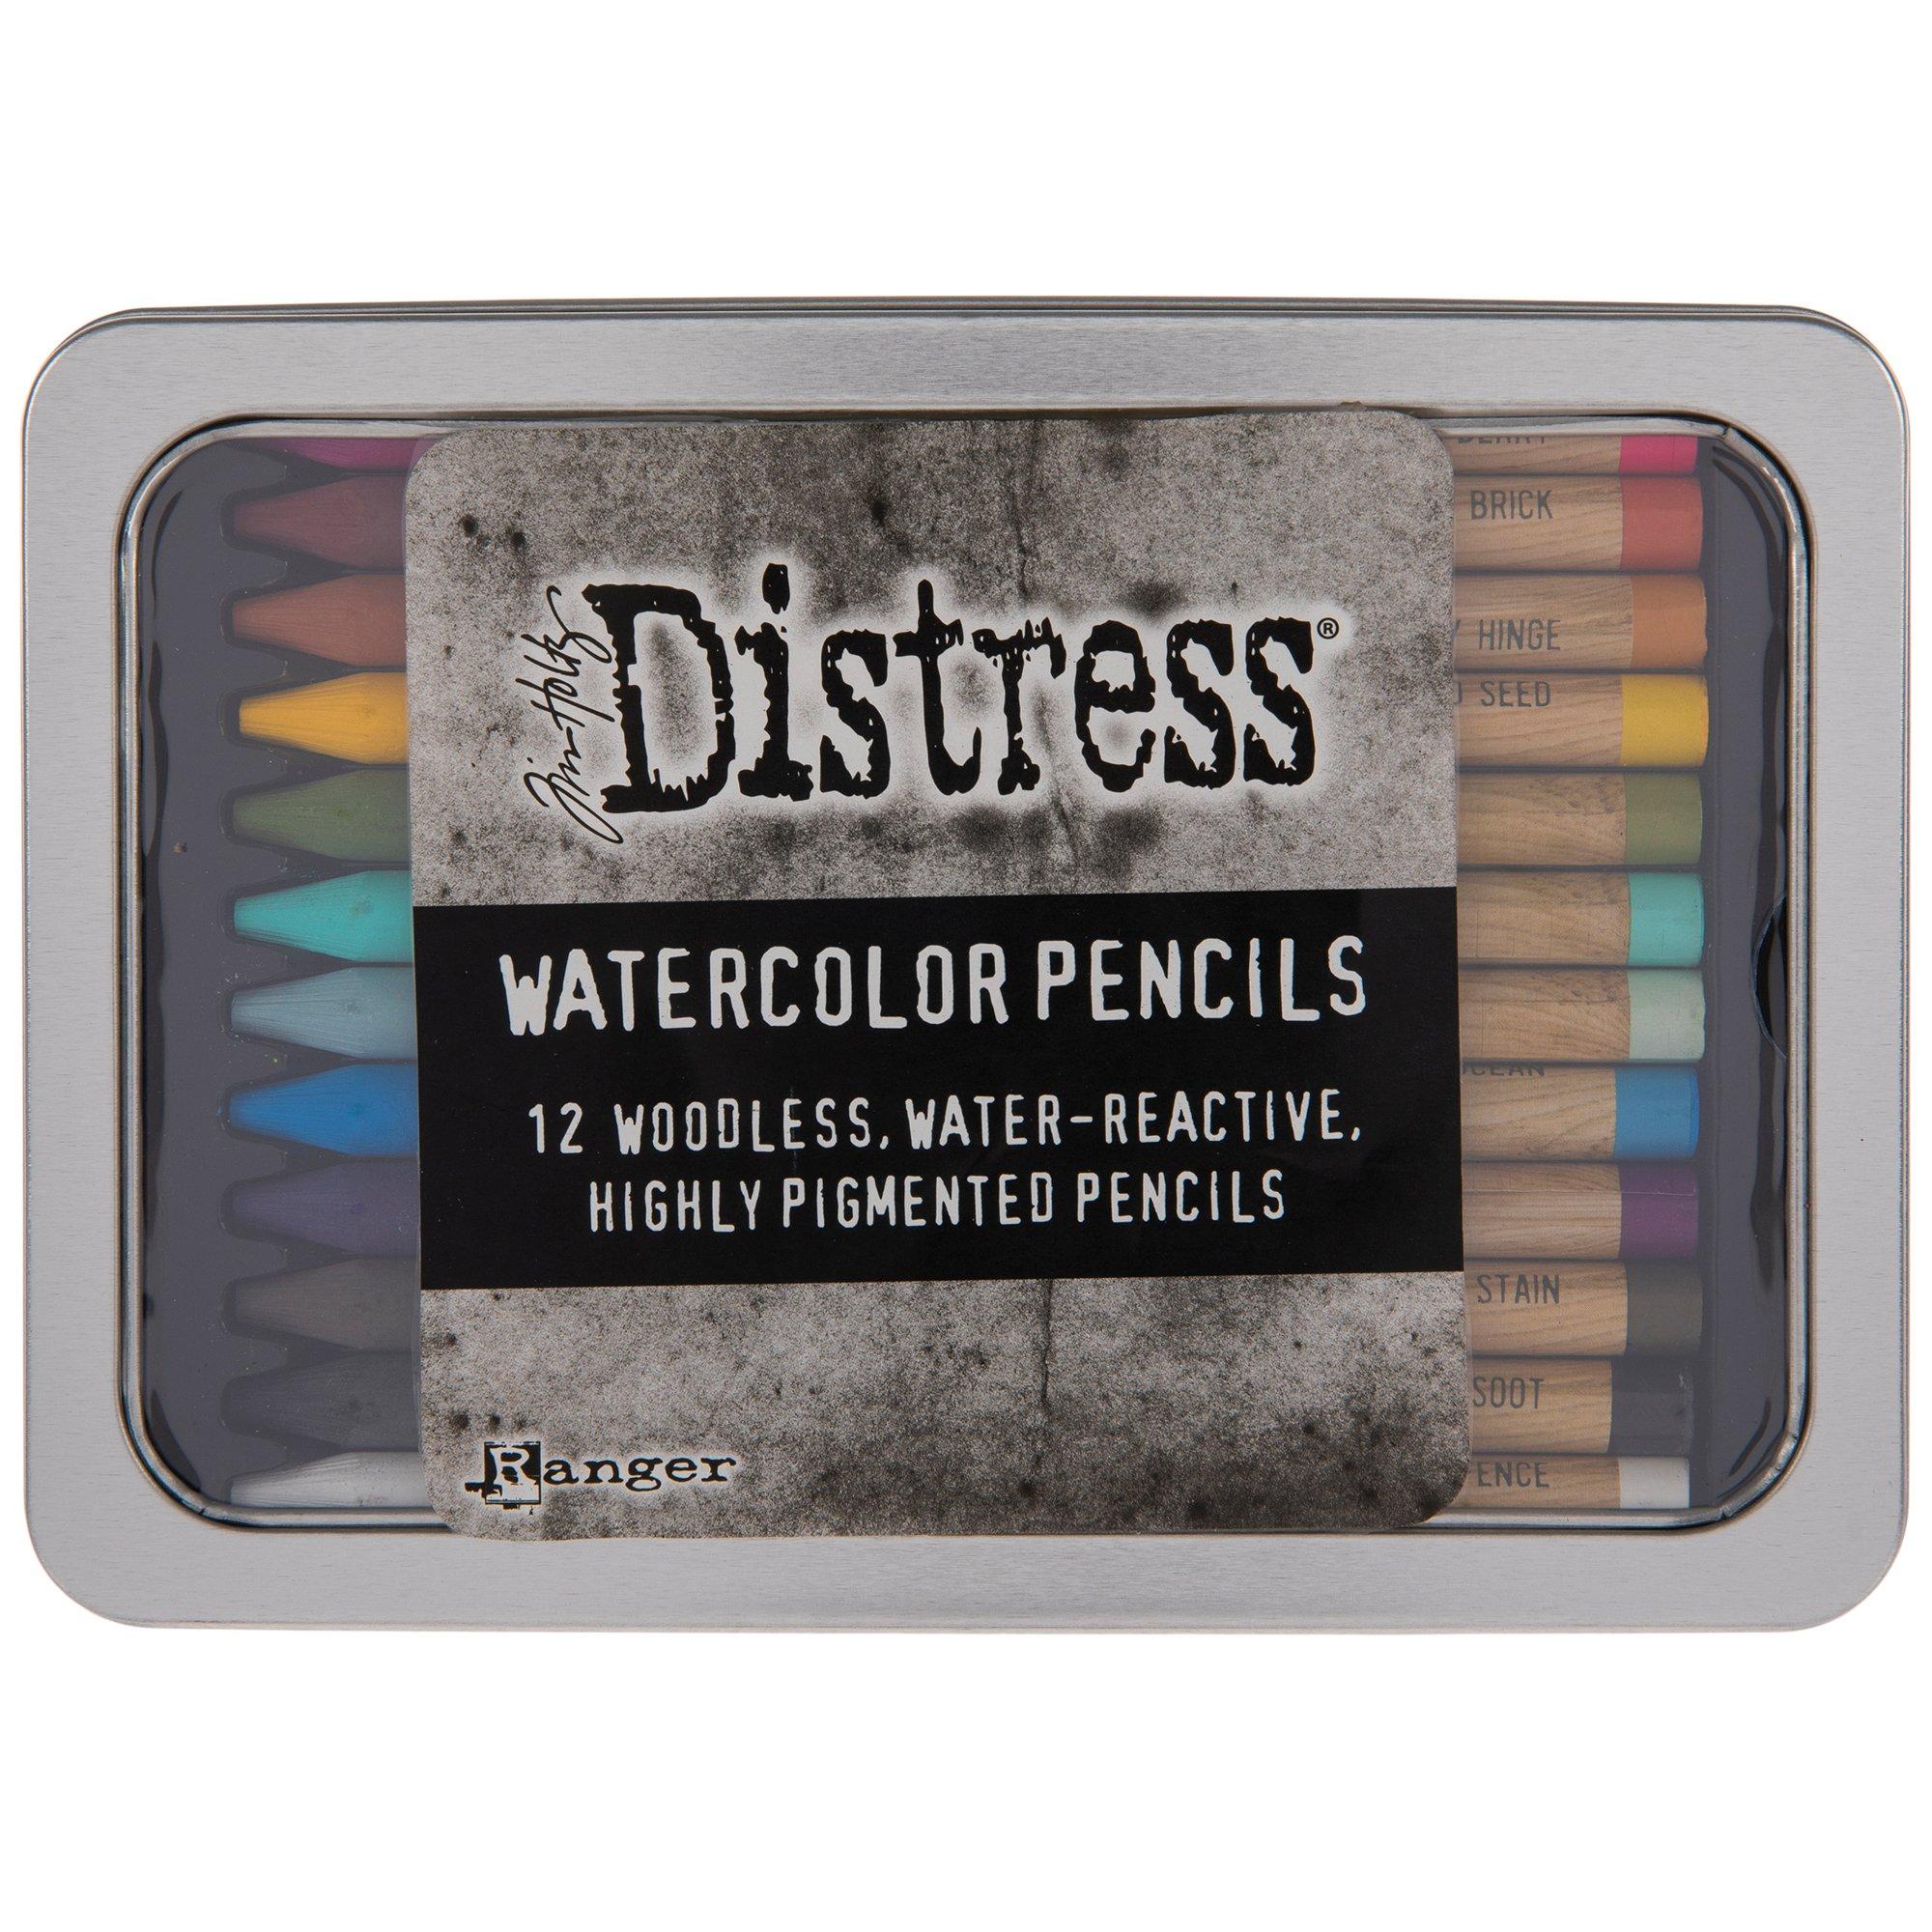 Tim Holtz Distress Watercolor Pencil Bundle - THWCPENBNDLE